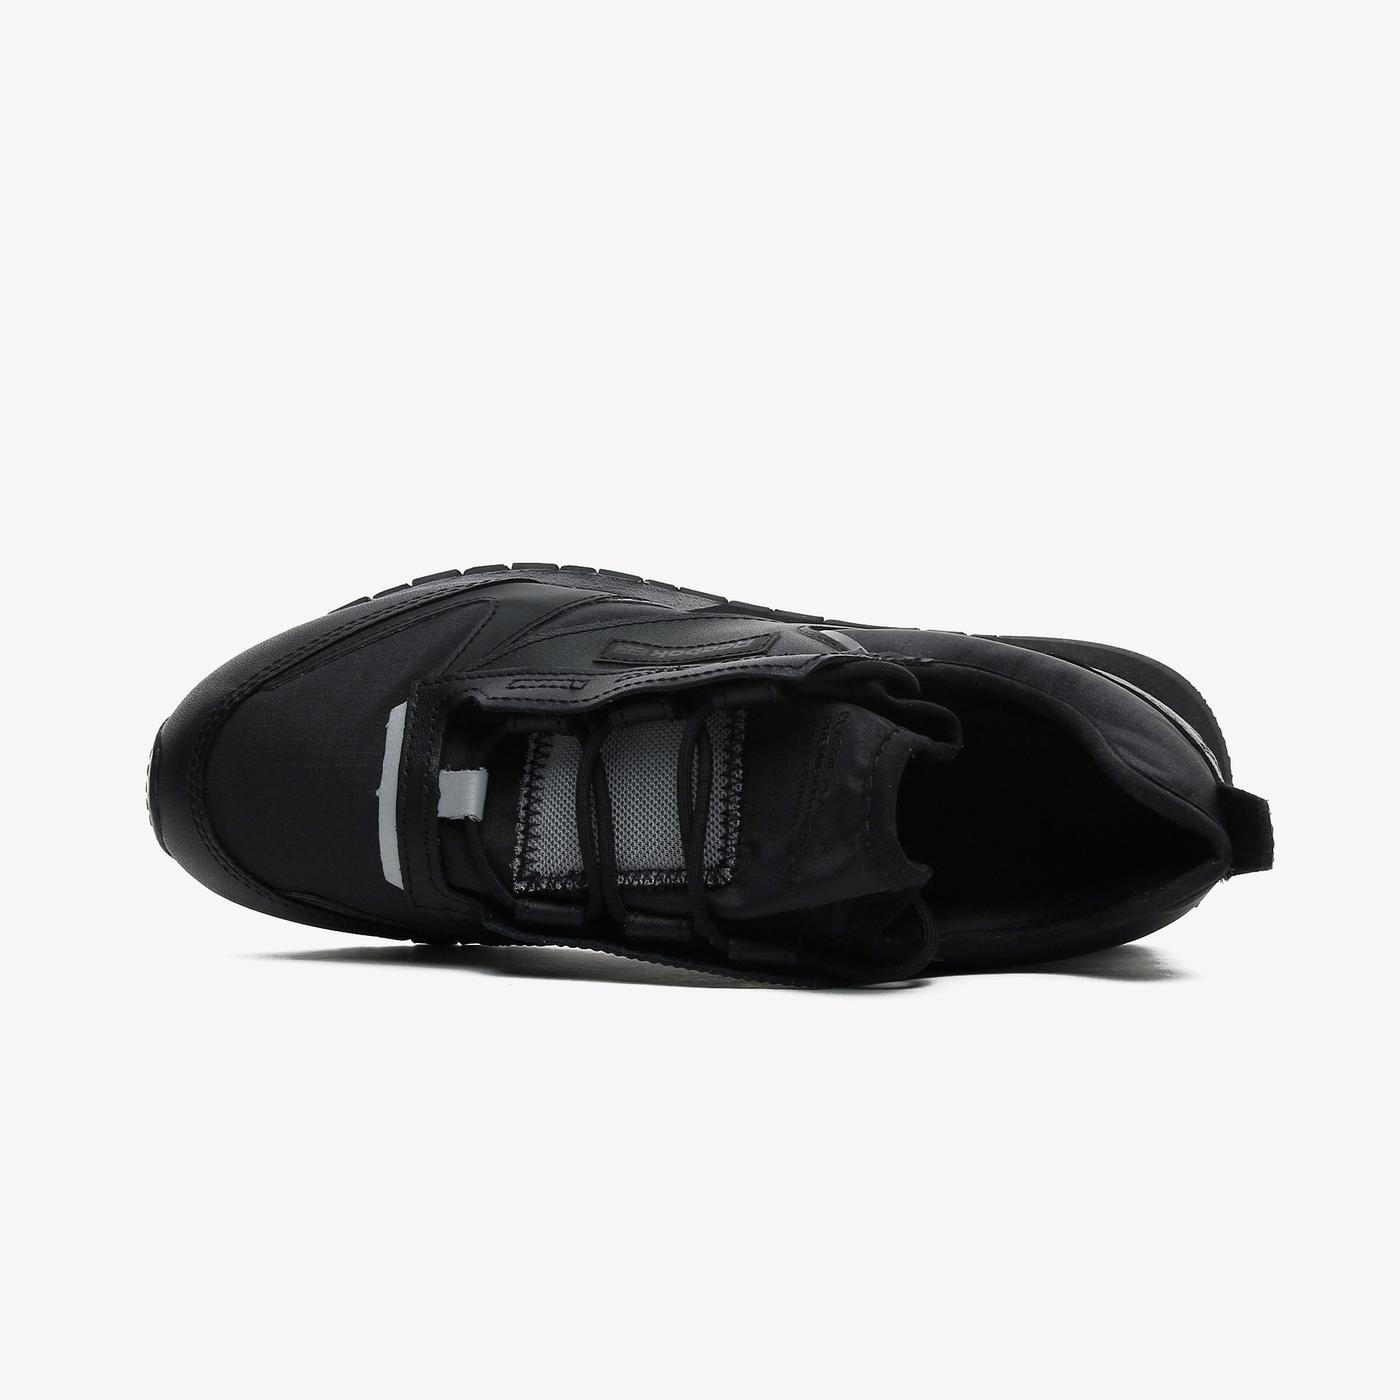 Reebok Classics Leather Premier Kadın Siyah Spor Ayakkabı